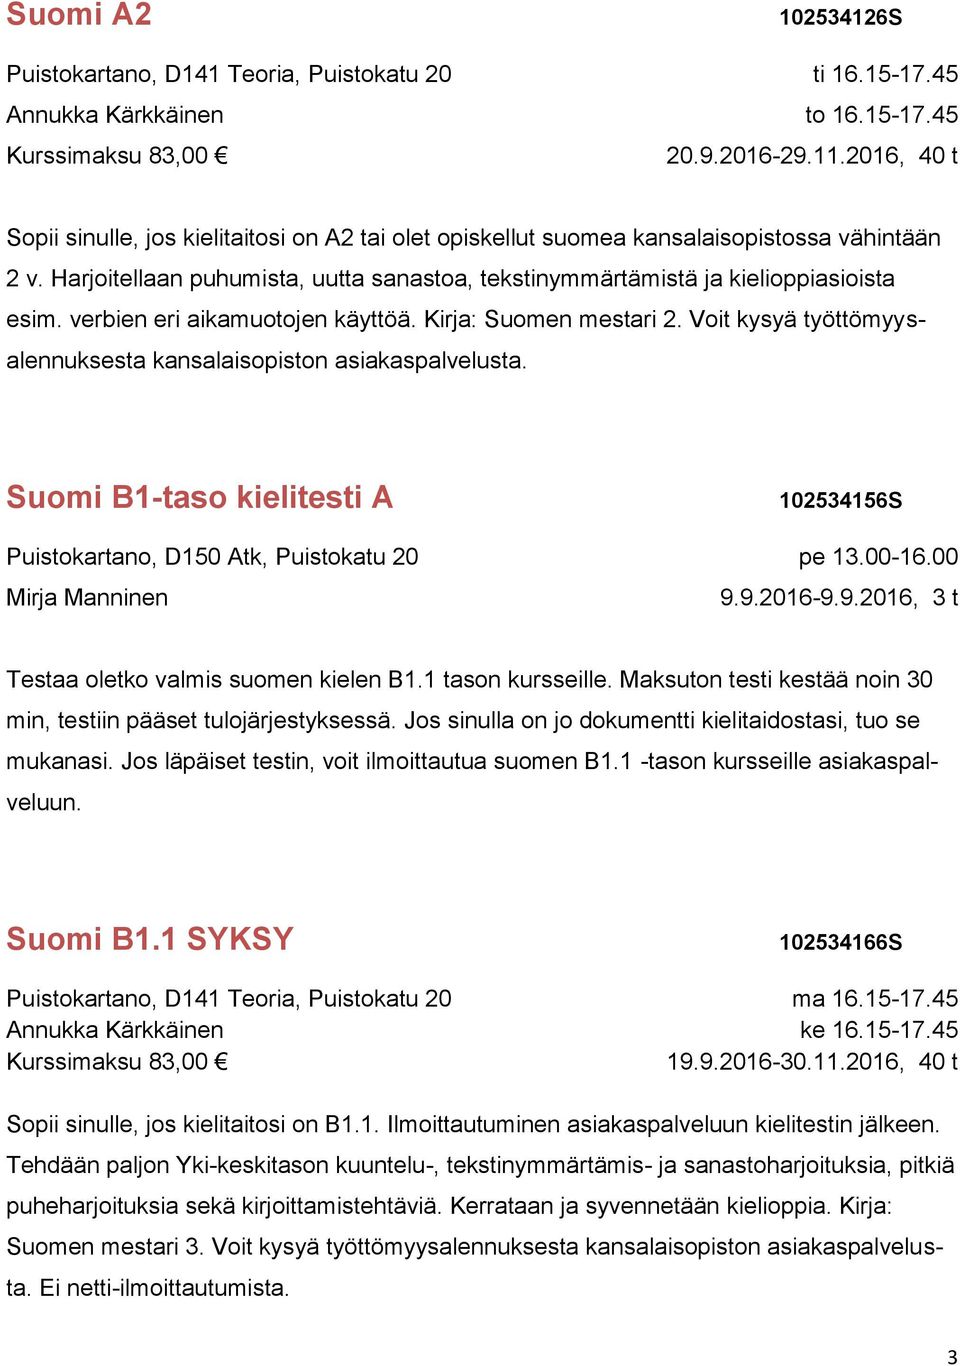 Voit kysyä työttömyysalennuksesta kansalaisopiston asiakaspalvelusta. Suomi B1-taso kielitesti A Puistokartano, D150 Atk, Puistokatu 20 102534156S pe 13.00-16.00 9.